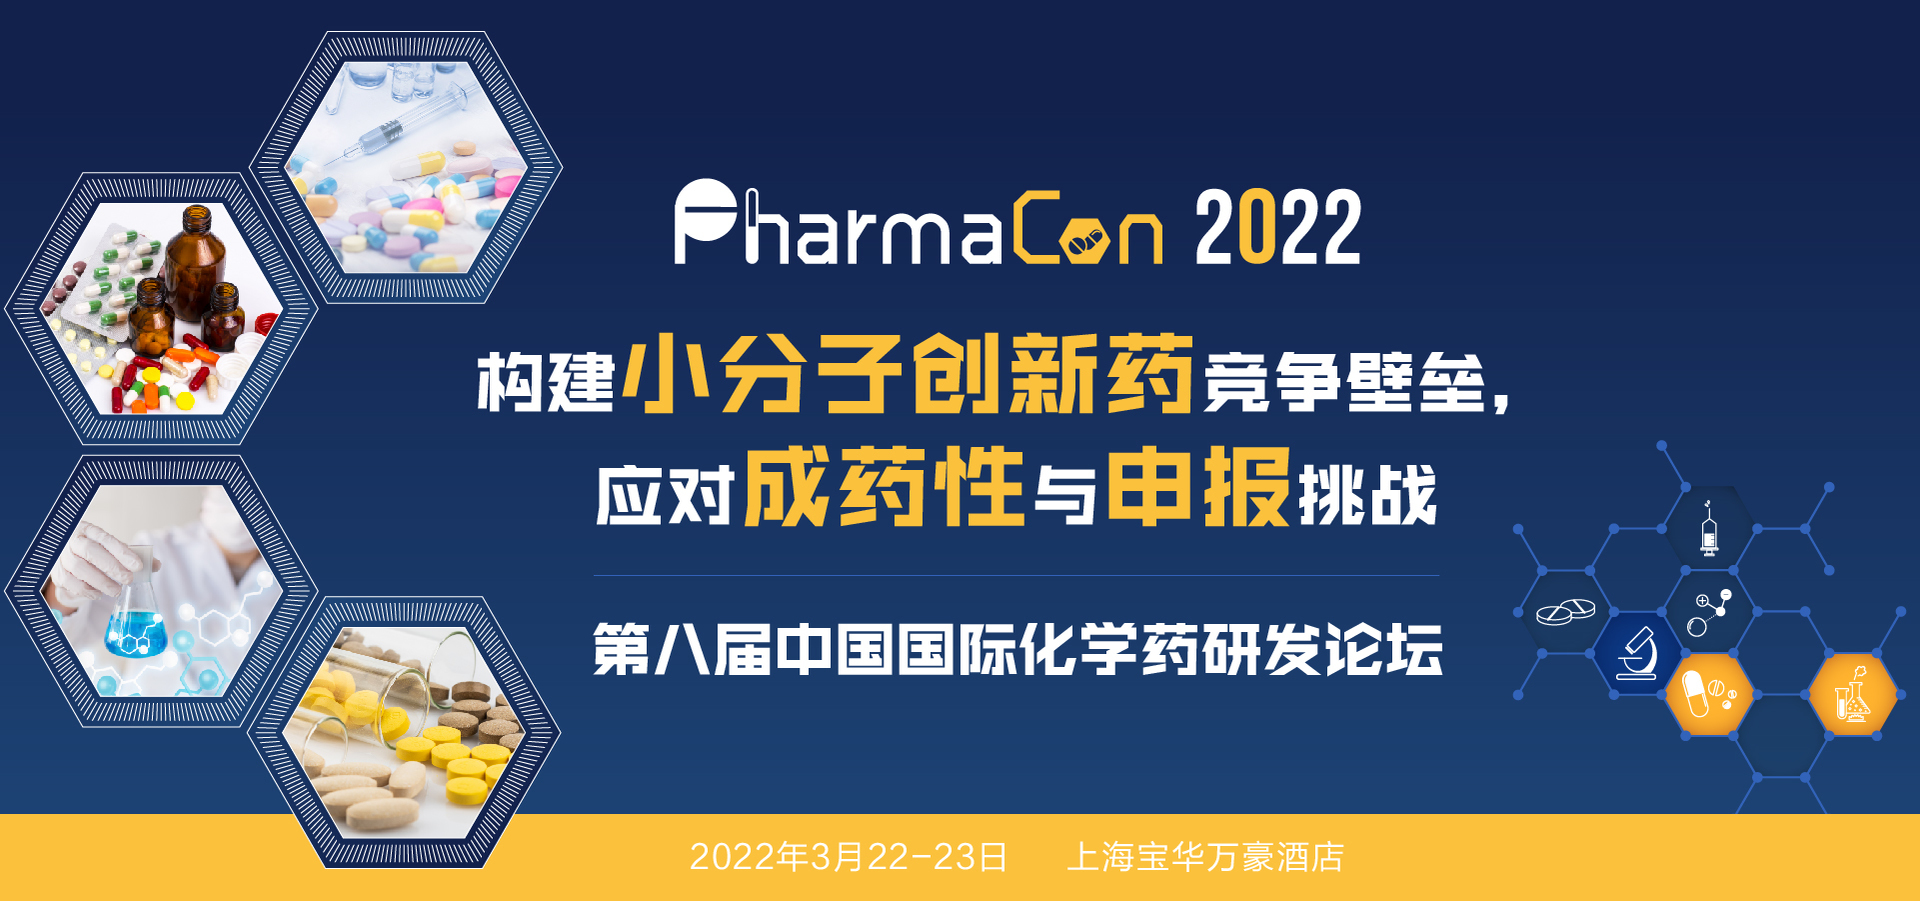 关注PharmaCon 2022第八届中国国际化学药研发论坛聚焦”小分子创新药”